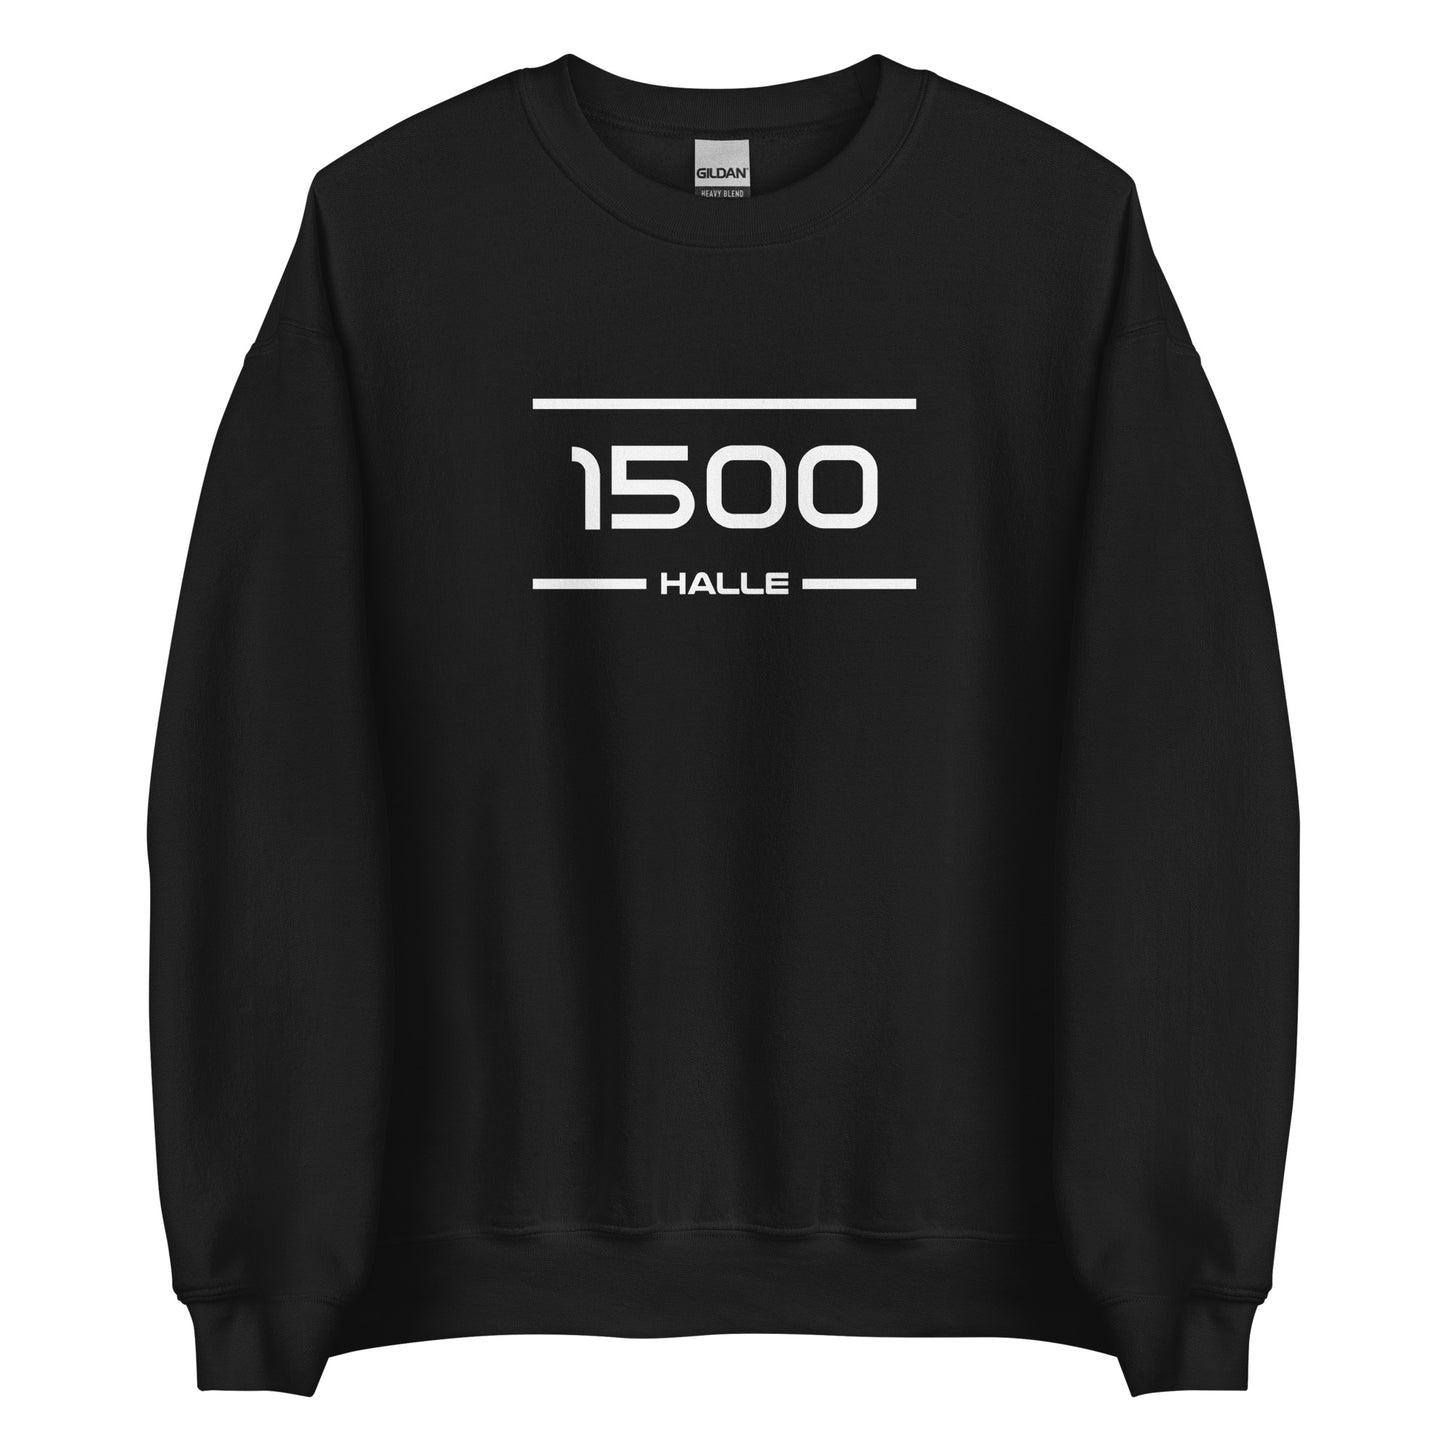 Sweater - 1500 - Halle (M/V)